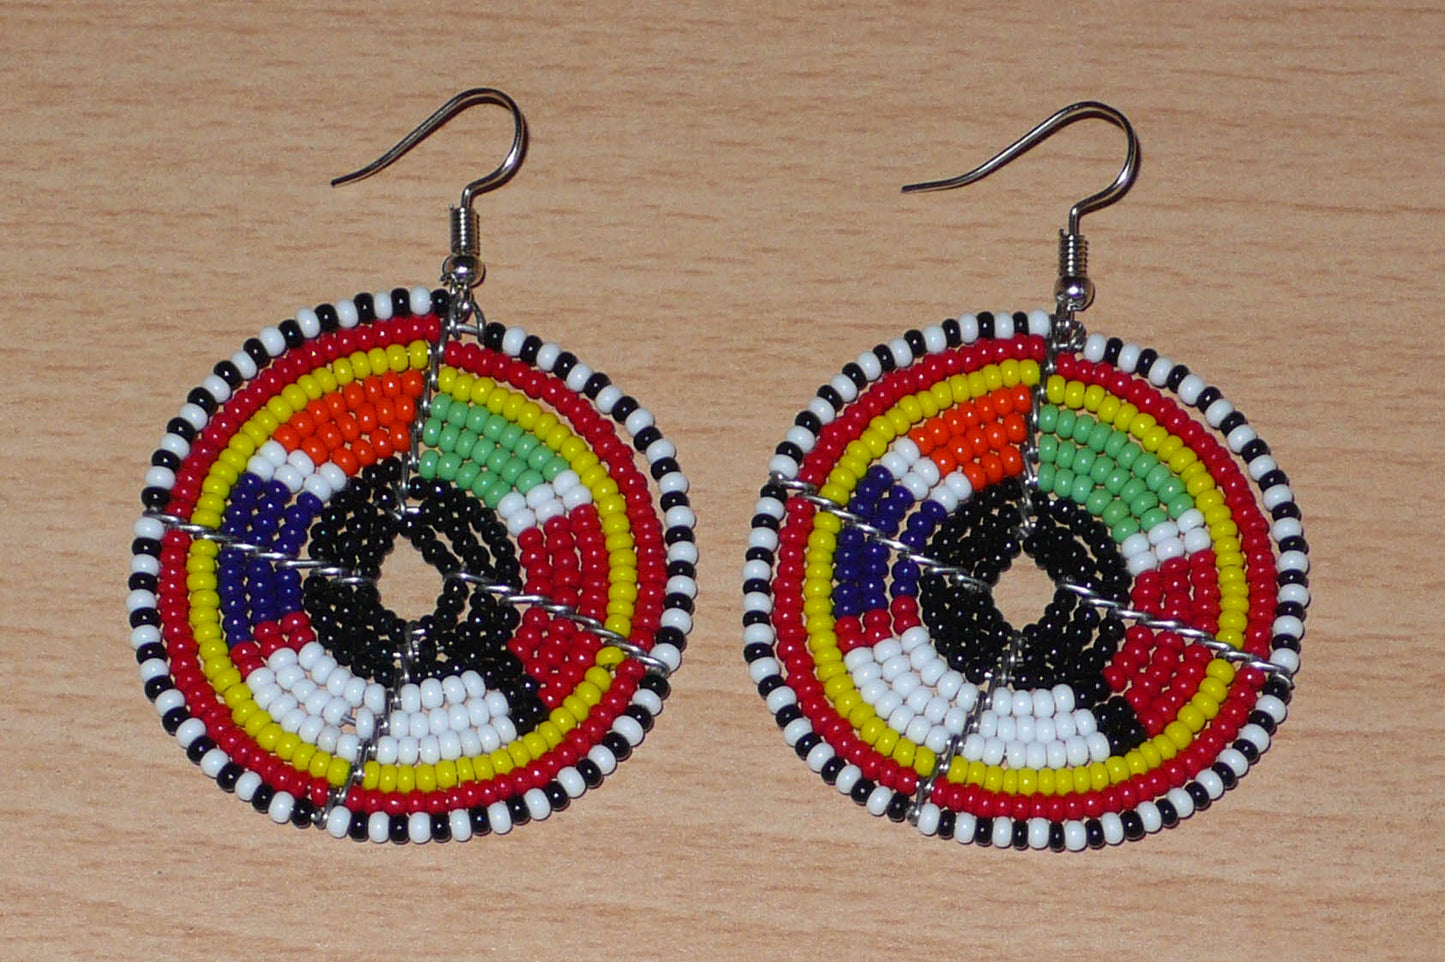 Boucles d'oreilles ethniques Massai composées de perles de rocaille multicolores glissées sur des fils de fer montés en forme de cercles. Elles mesurent 6,5 cm de long et 4,5 cm de large et se portent avec des crochets en acier inoxydable sur des oreilles percées.